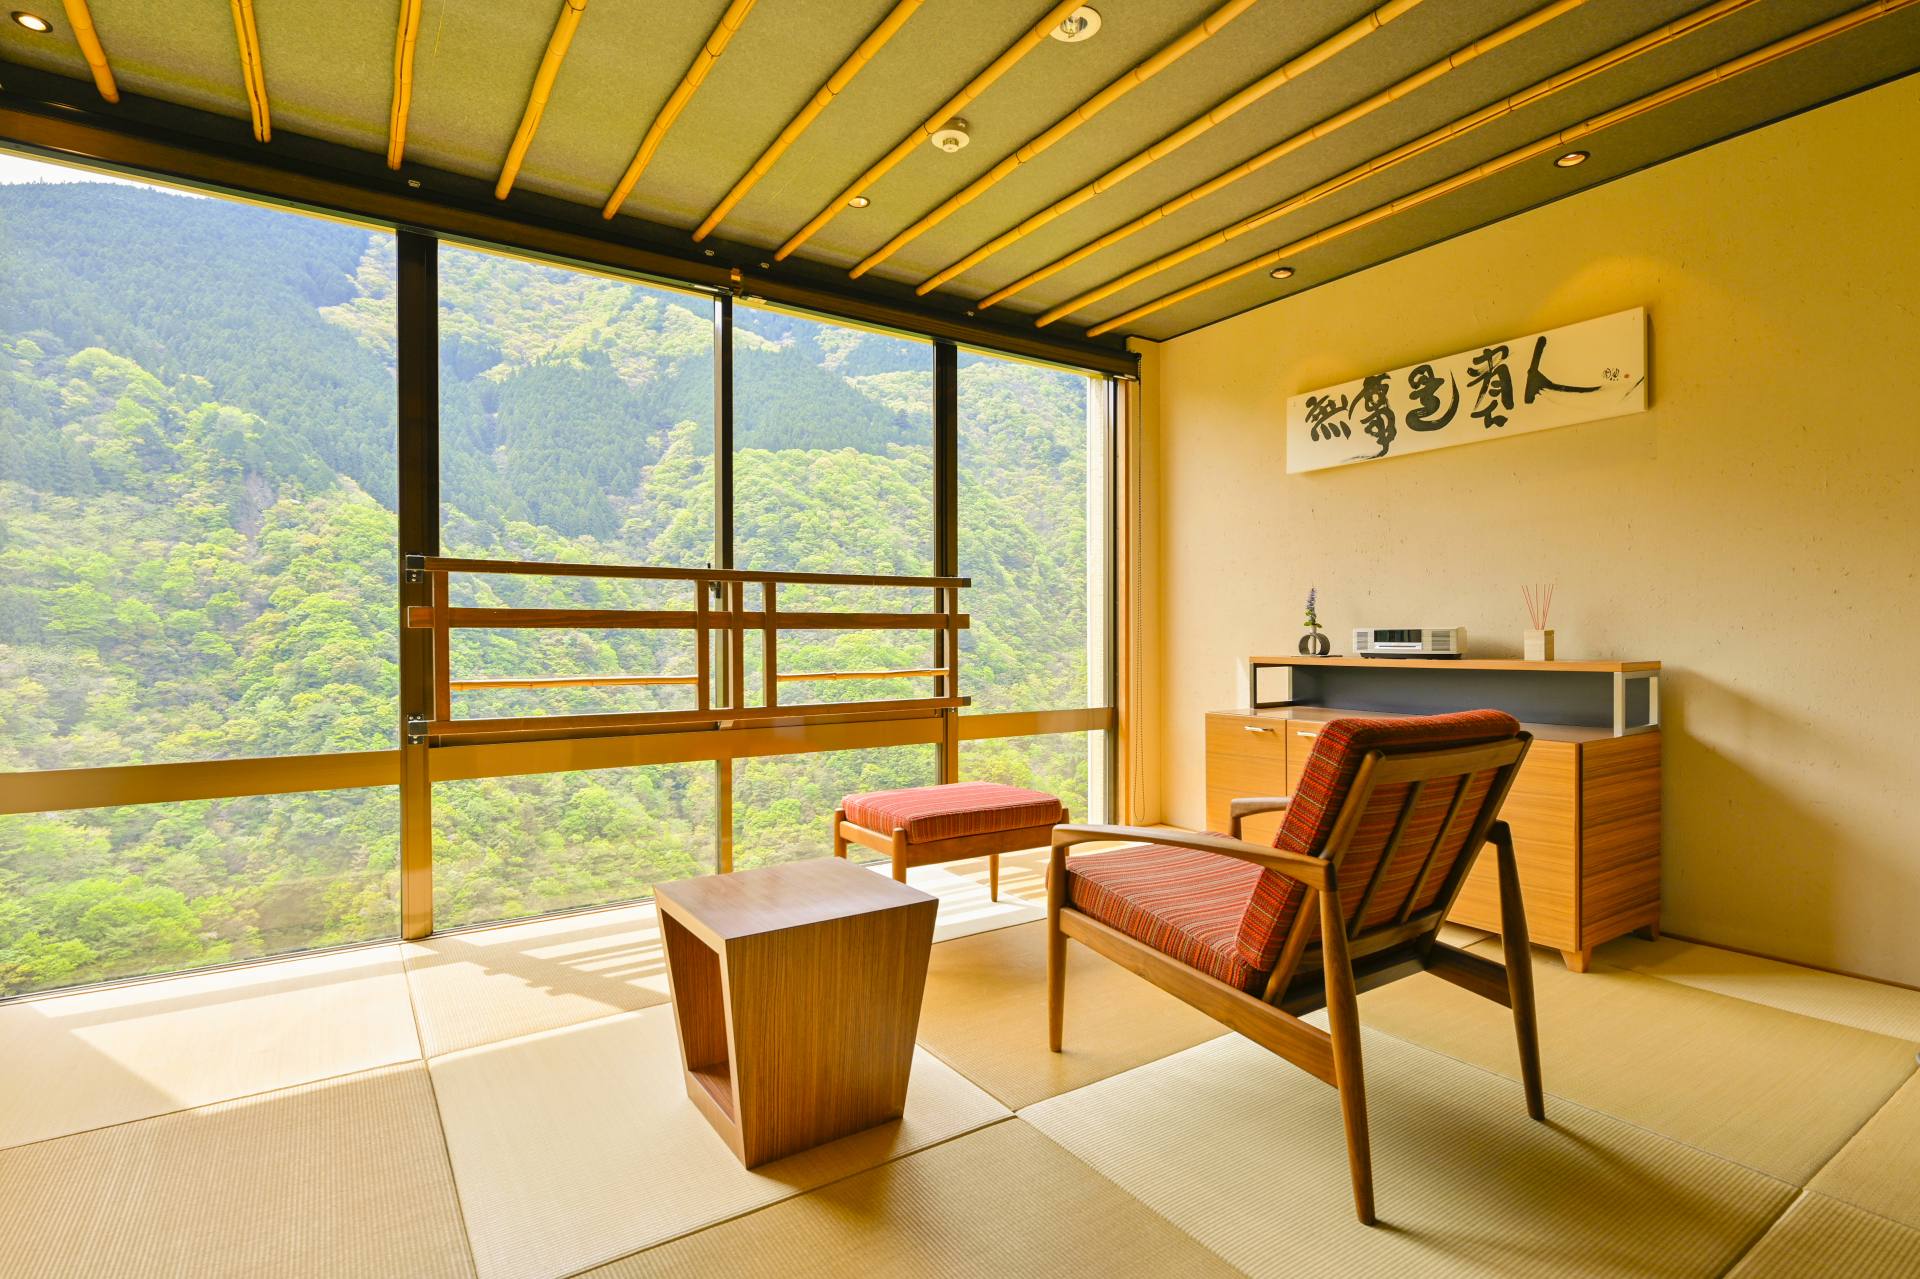 スイート仕様の客室からも、祖谷渓の雄大な景色が眺められる